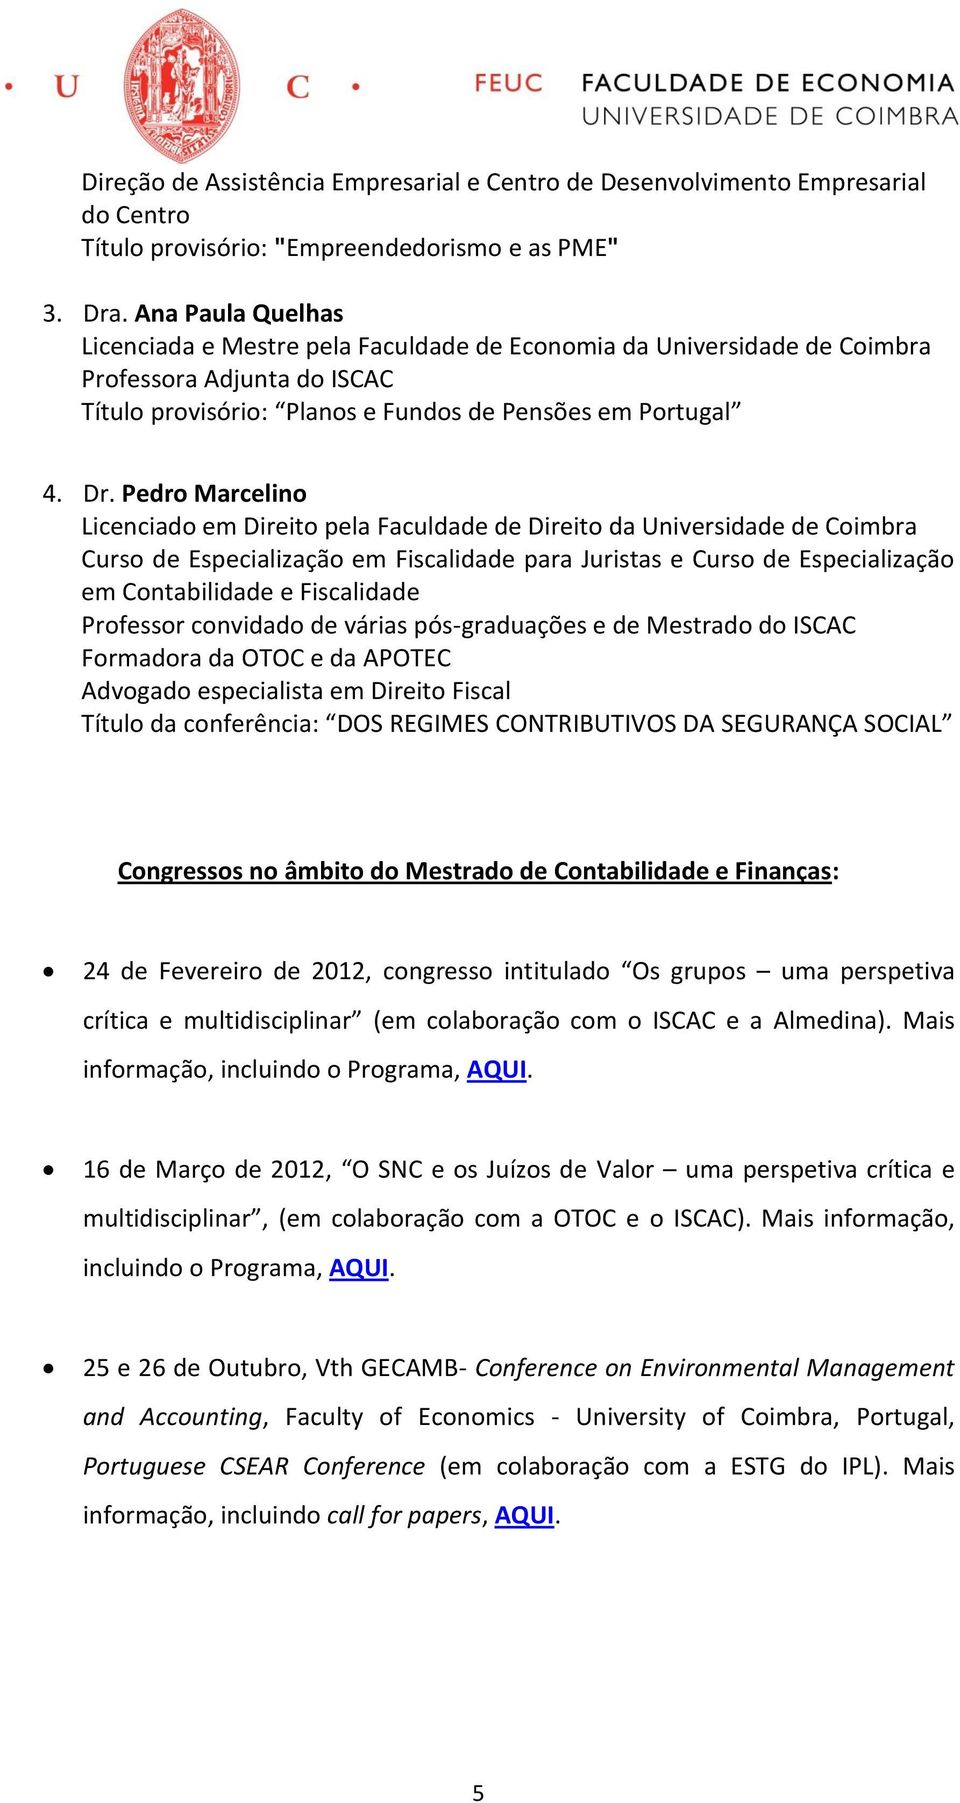 Pedro Marcelino Licenciado em Direito pela Faculdade de Direito da Universidade de Coimbra Curso de Especialização em Fiscalidade para Juristas e Curso de Especialização em Contabilidade e